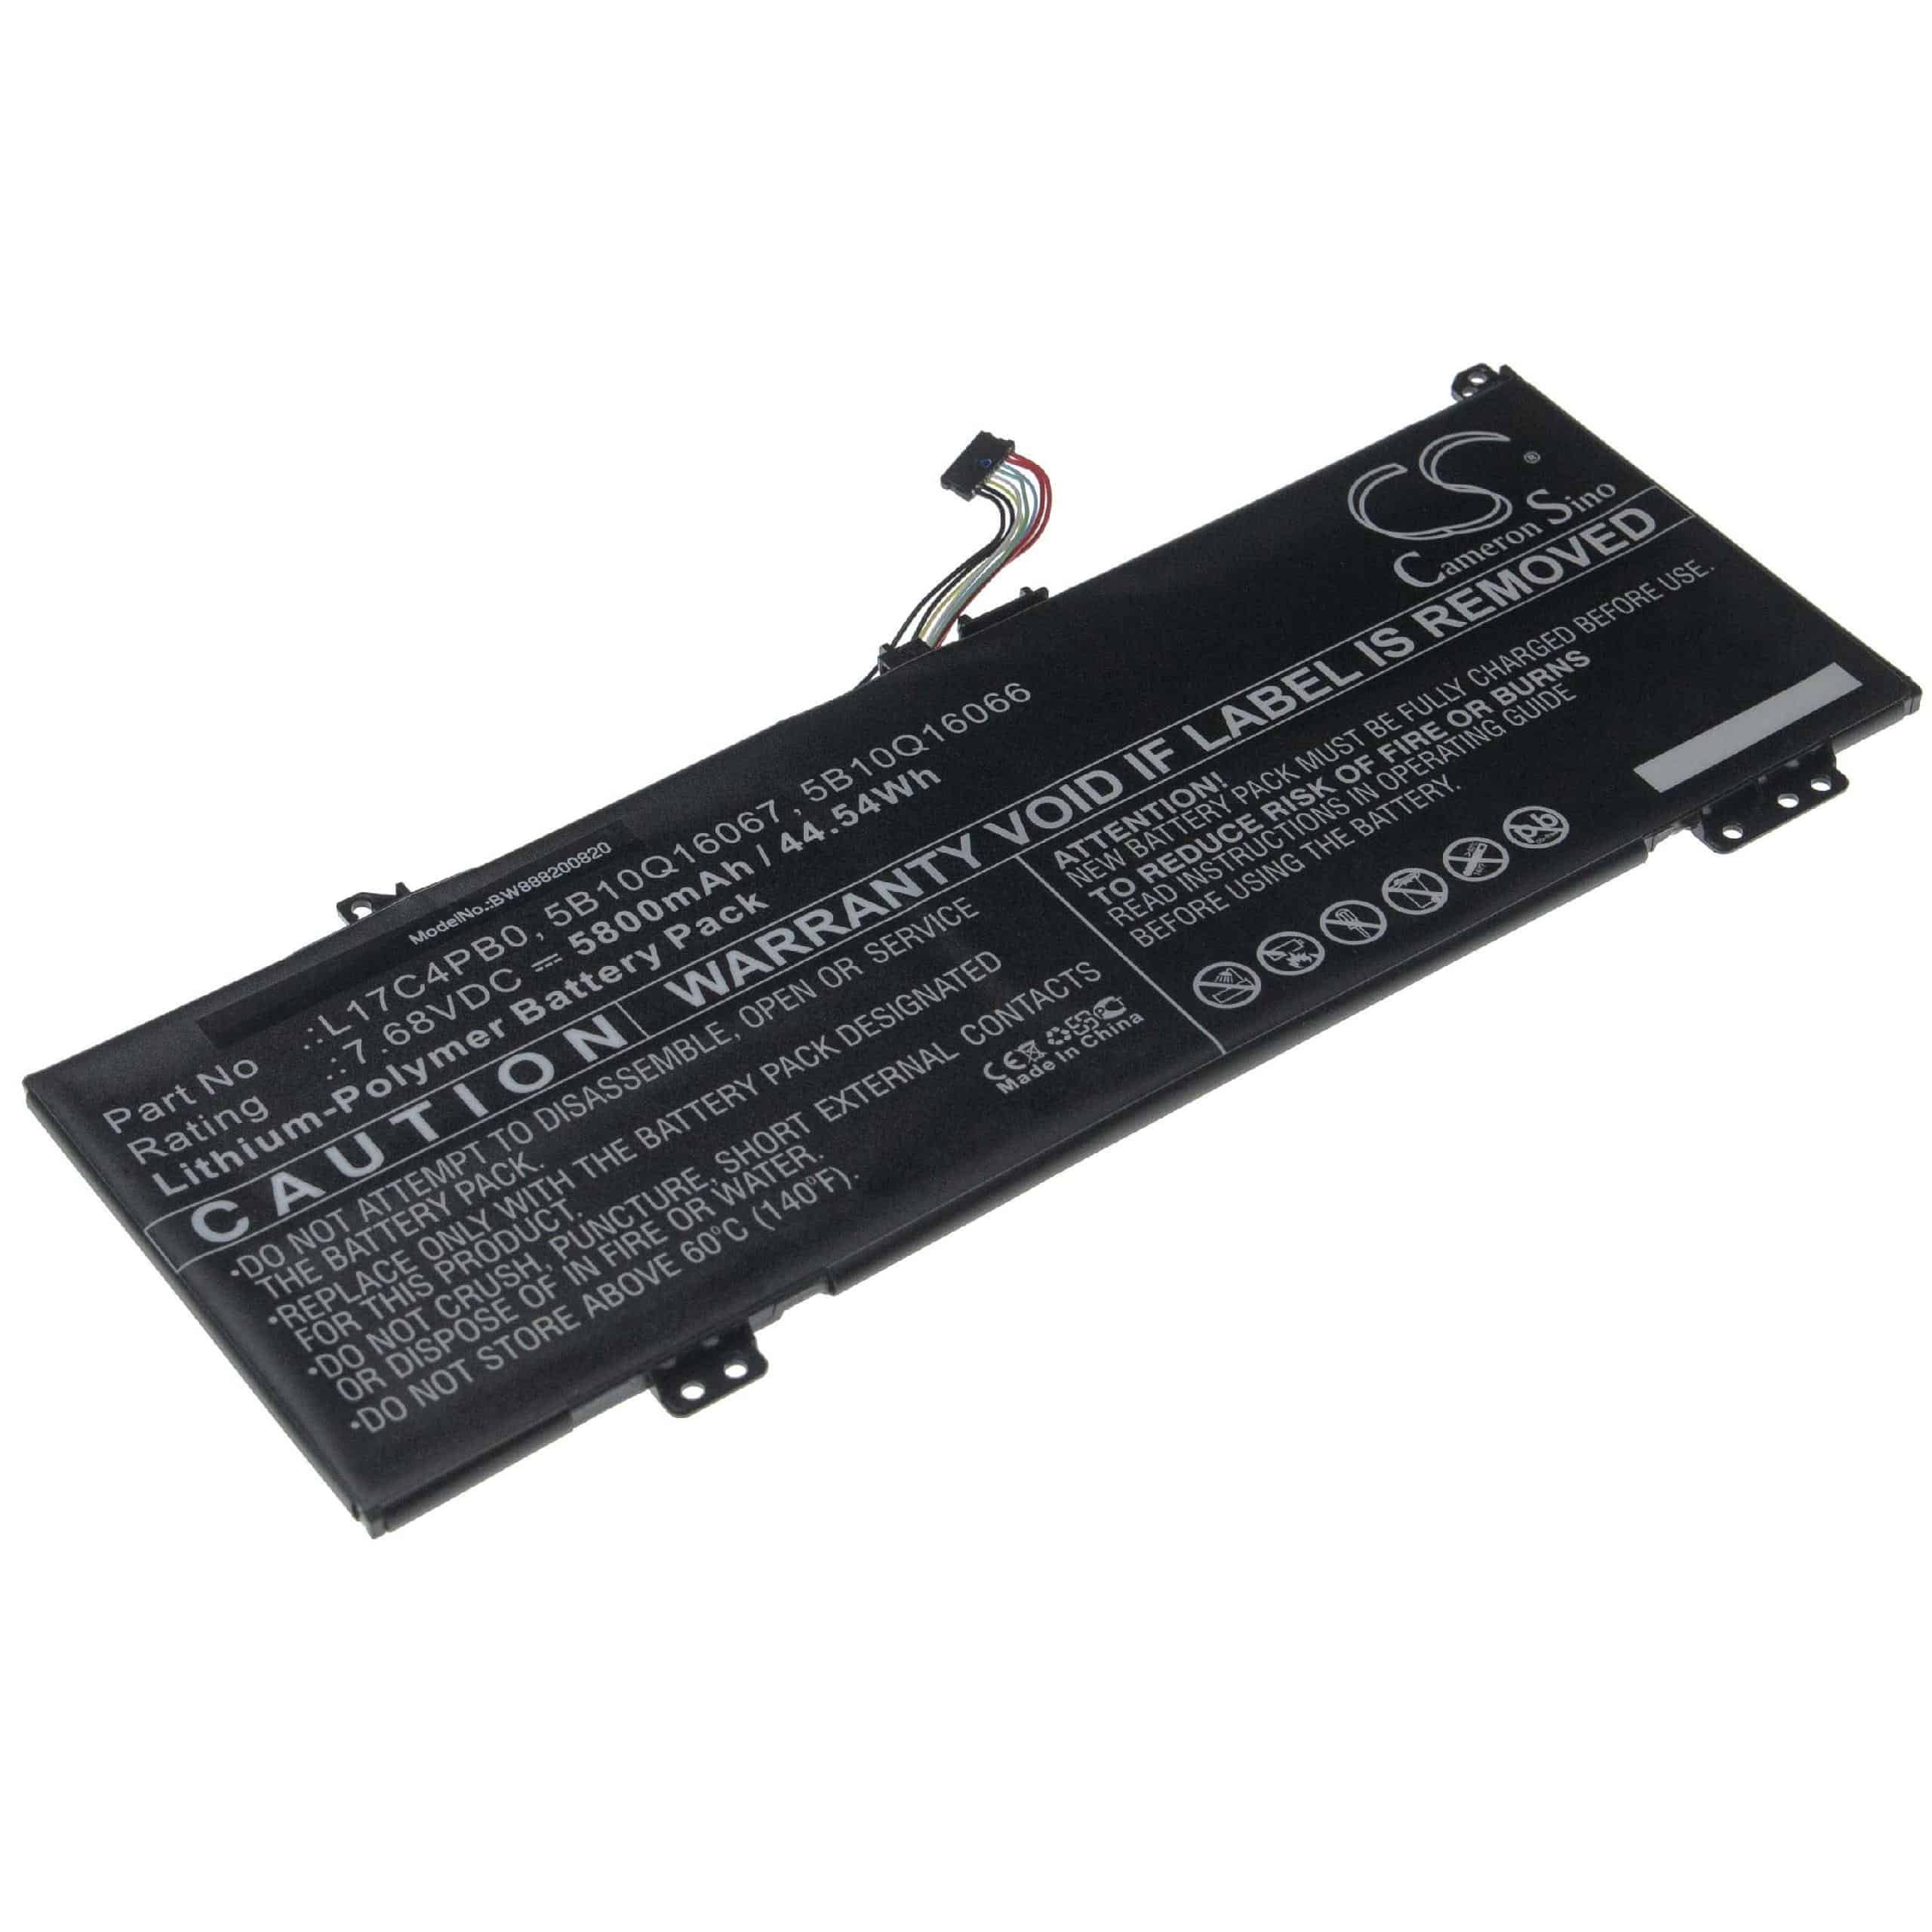 Notebook Battery Replacement for Lenovo 5B10Q16067, 5B10Q16066, 5B10Q22883 - 5800mAh 7.68V Li-polymer, black